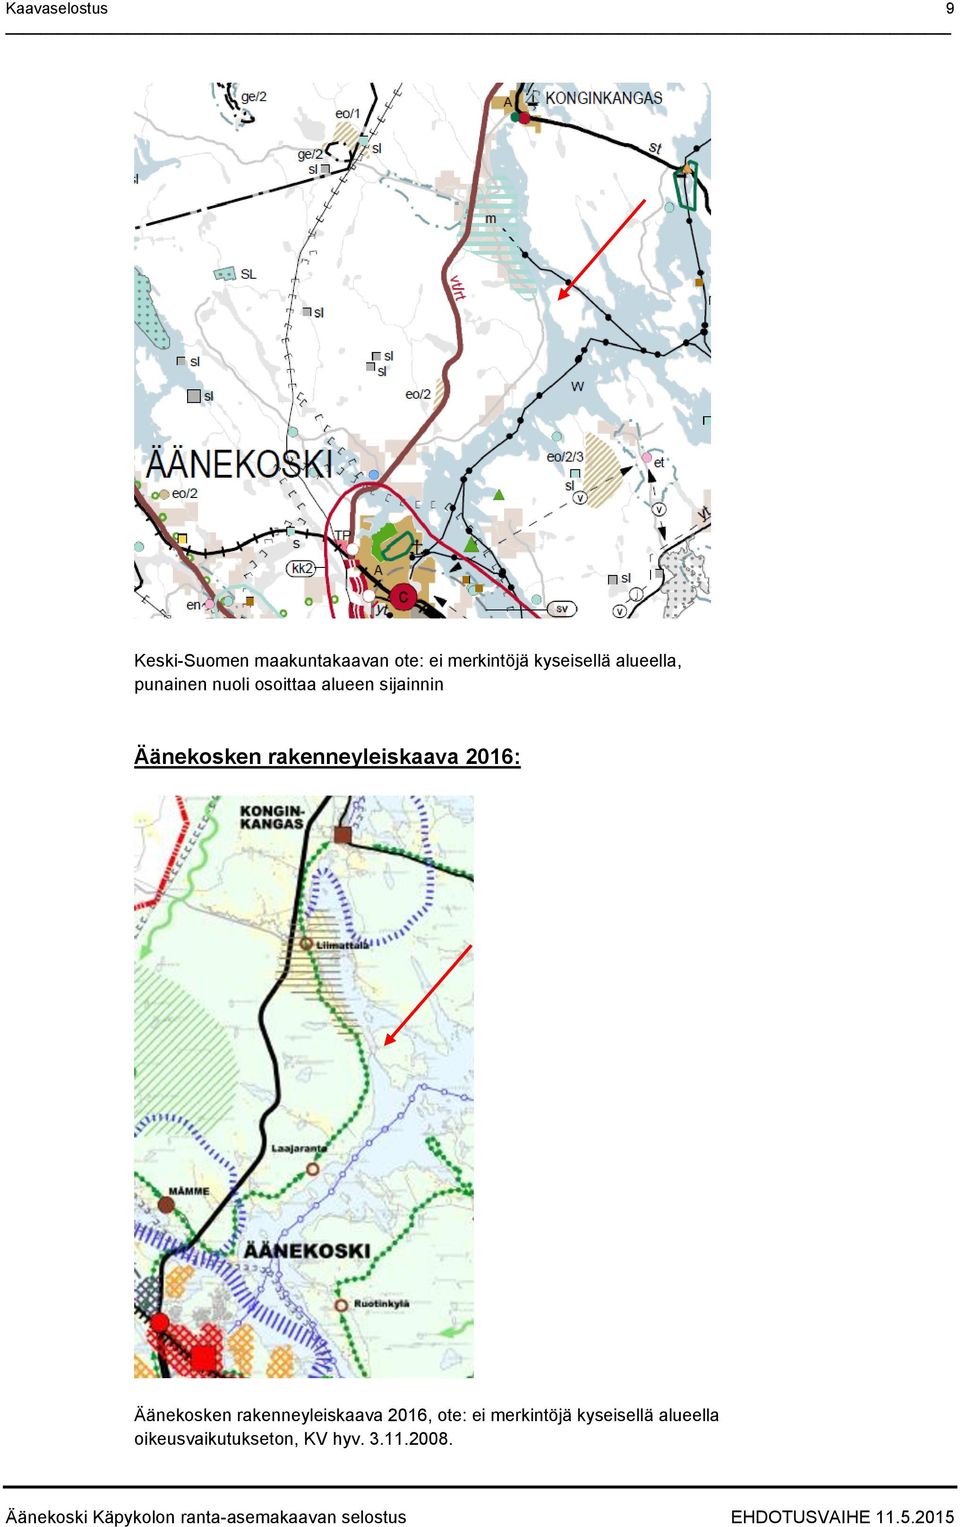 rakenneyleiskaava 2016: Äänekosken rakenneyleiskaava 2016, ote: